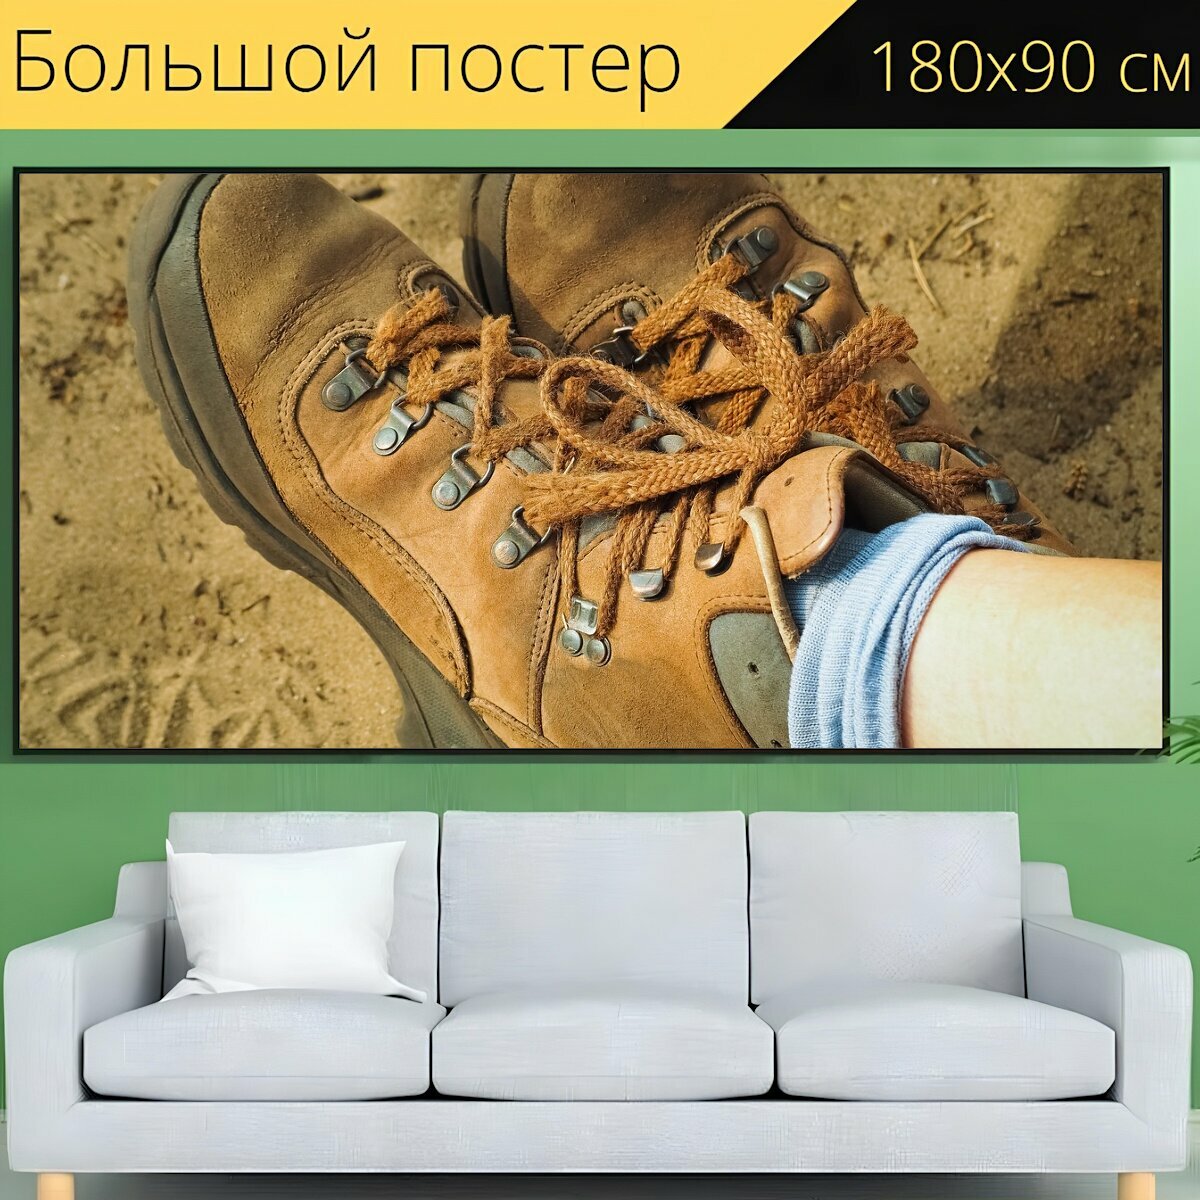 Большой постер "Ботинки для прогулки, обувь, поход" 180 x 90 см. для интерьера